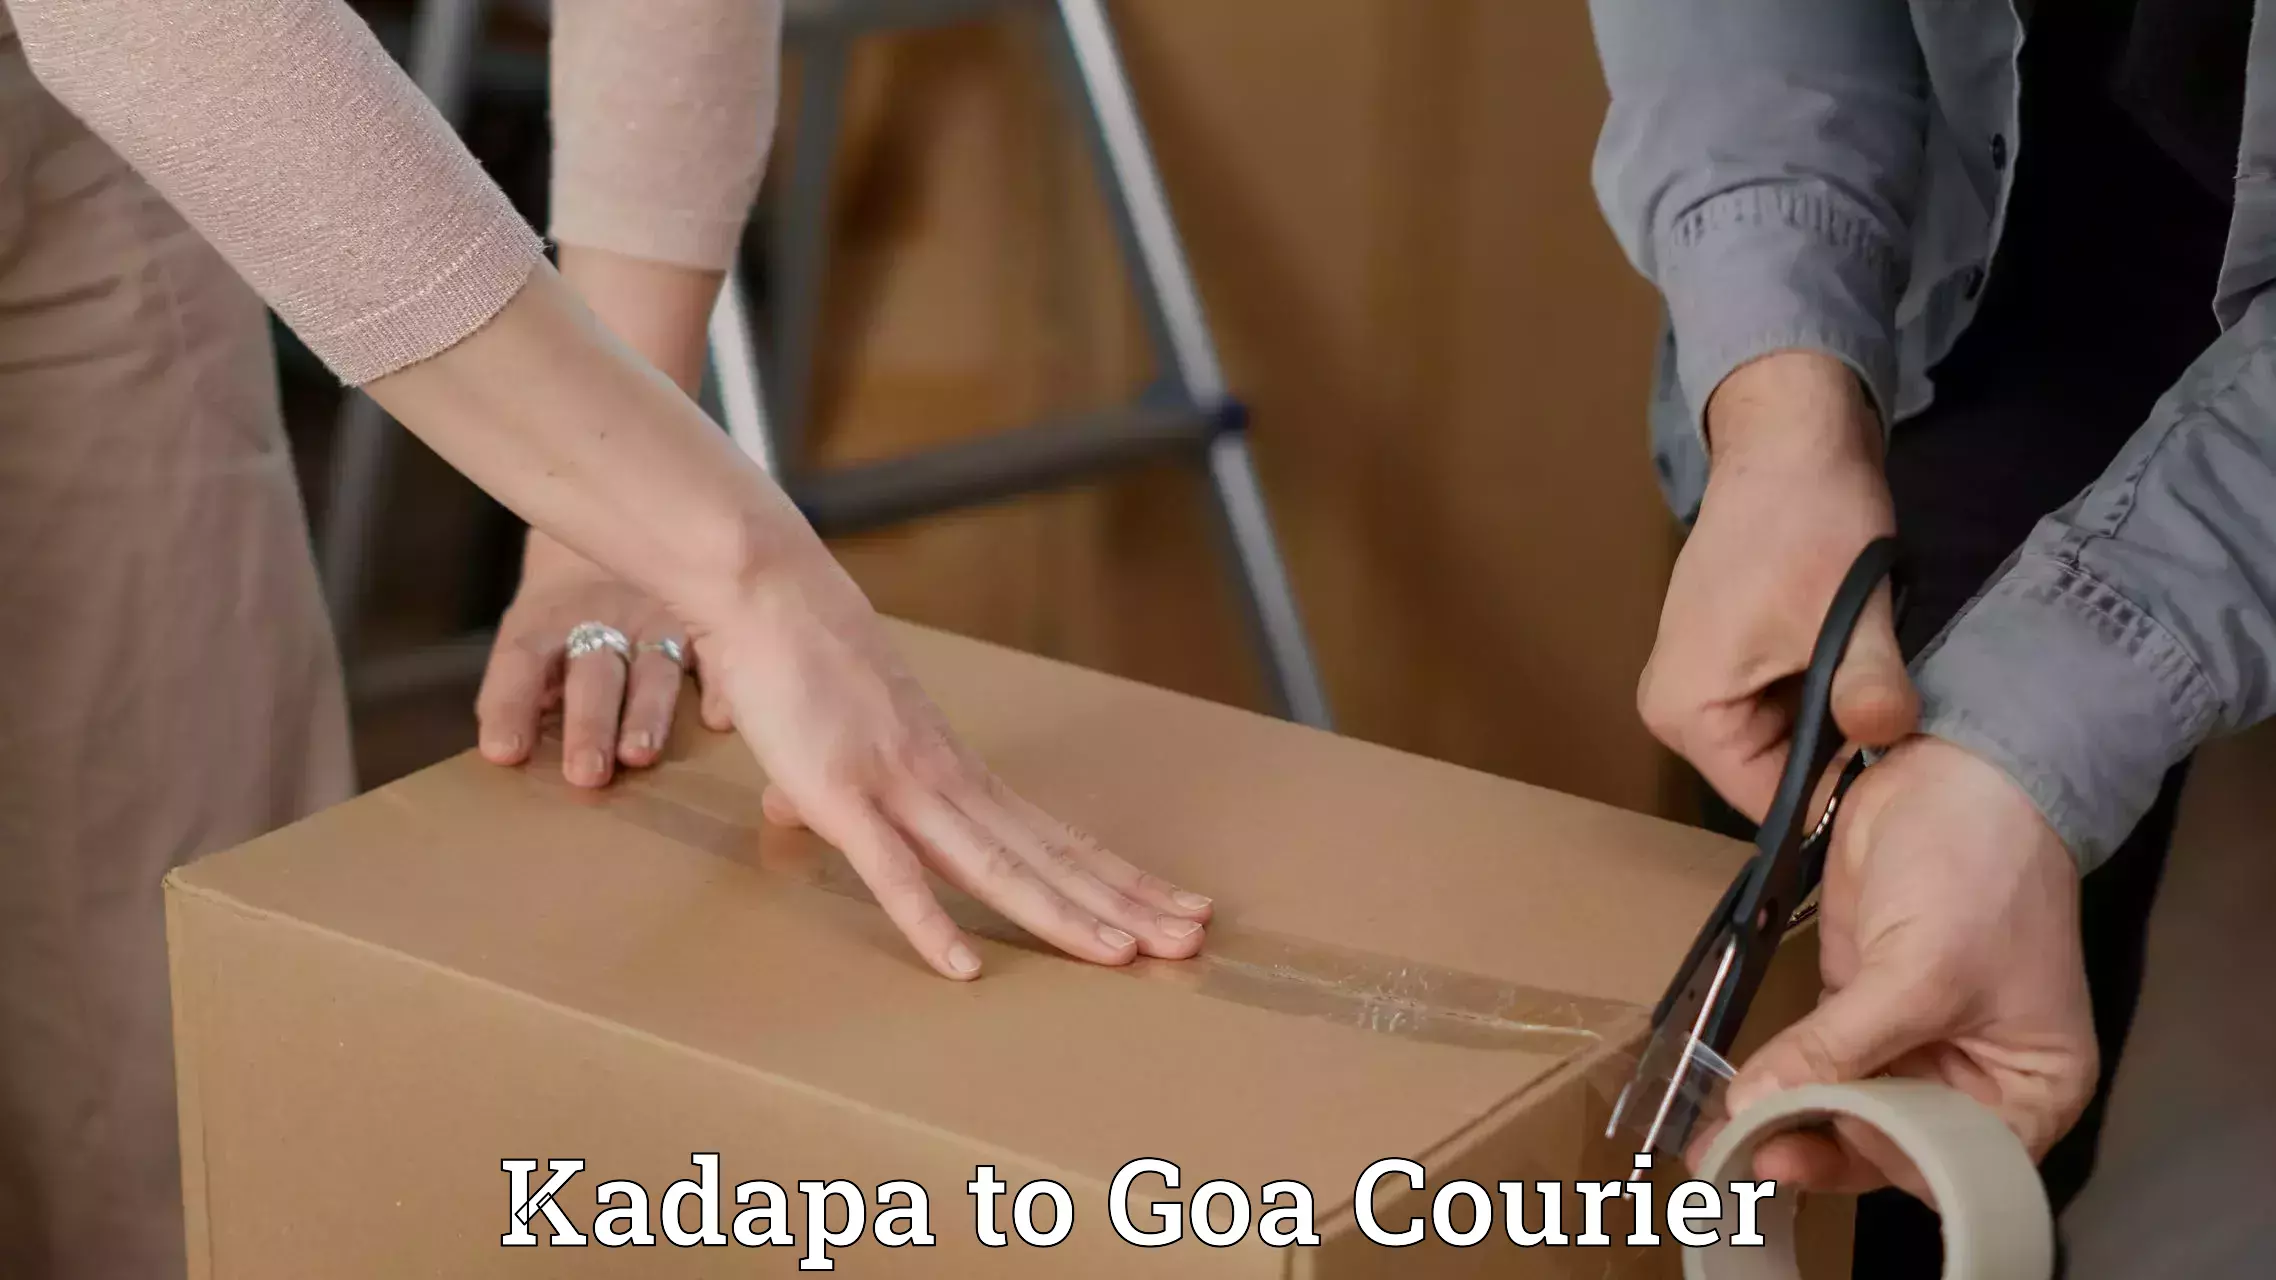 Global freight services Kadapa to NIT Goa